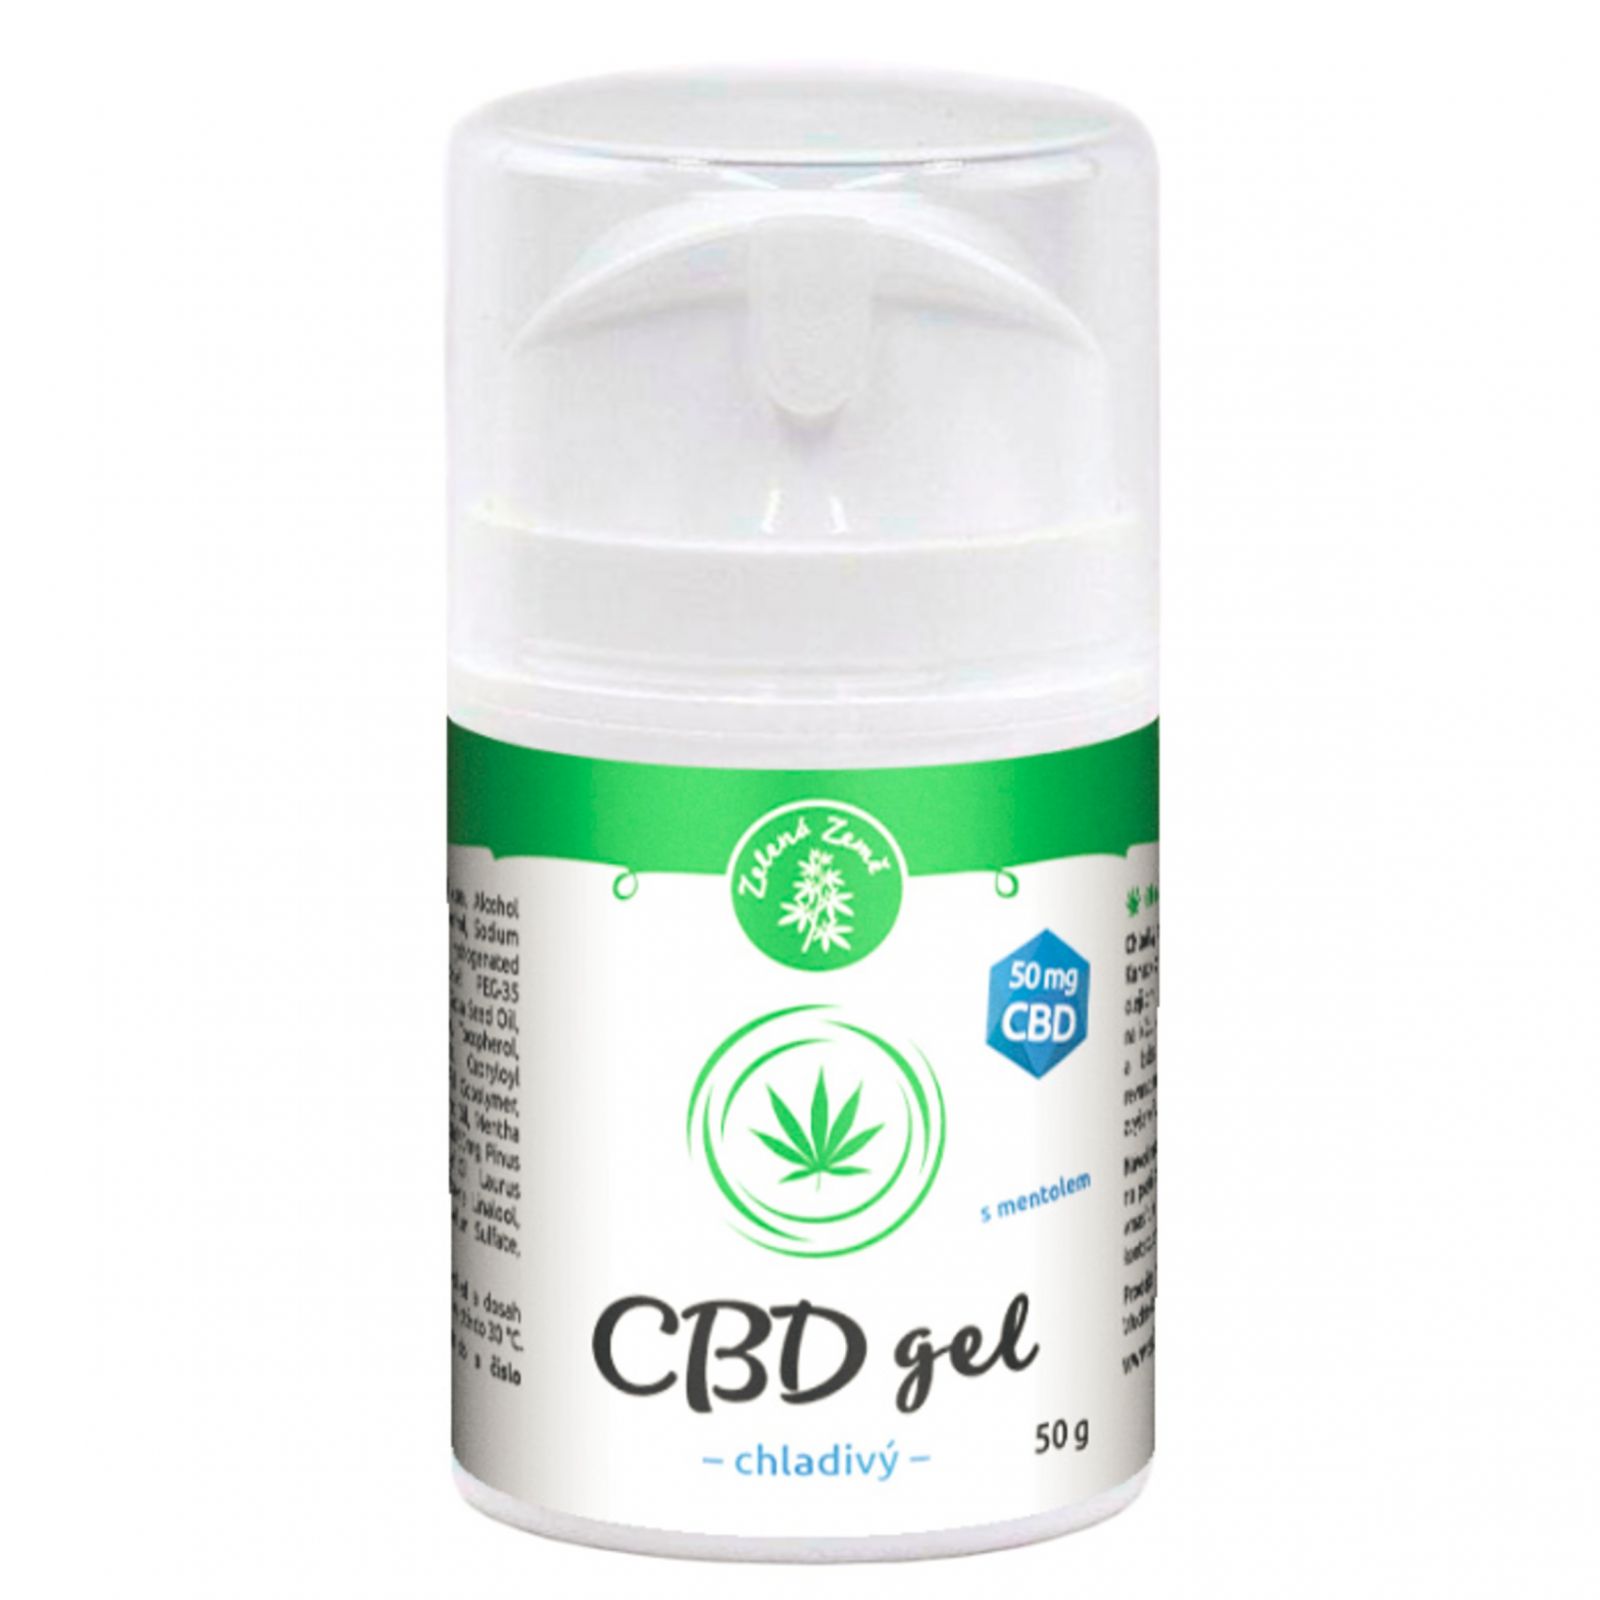  Zelená Země CBD chladivý gel s mentolem 50 g